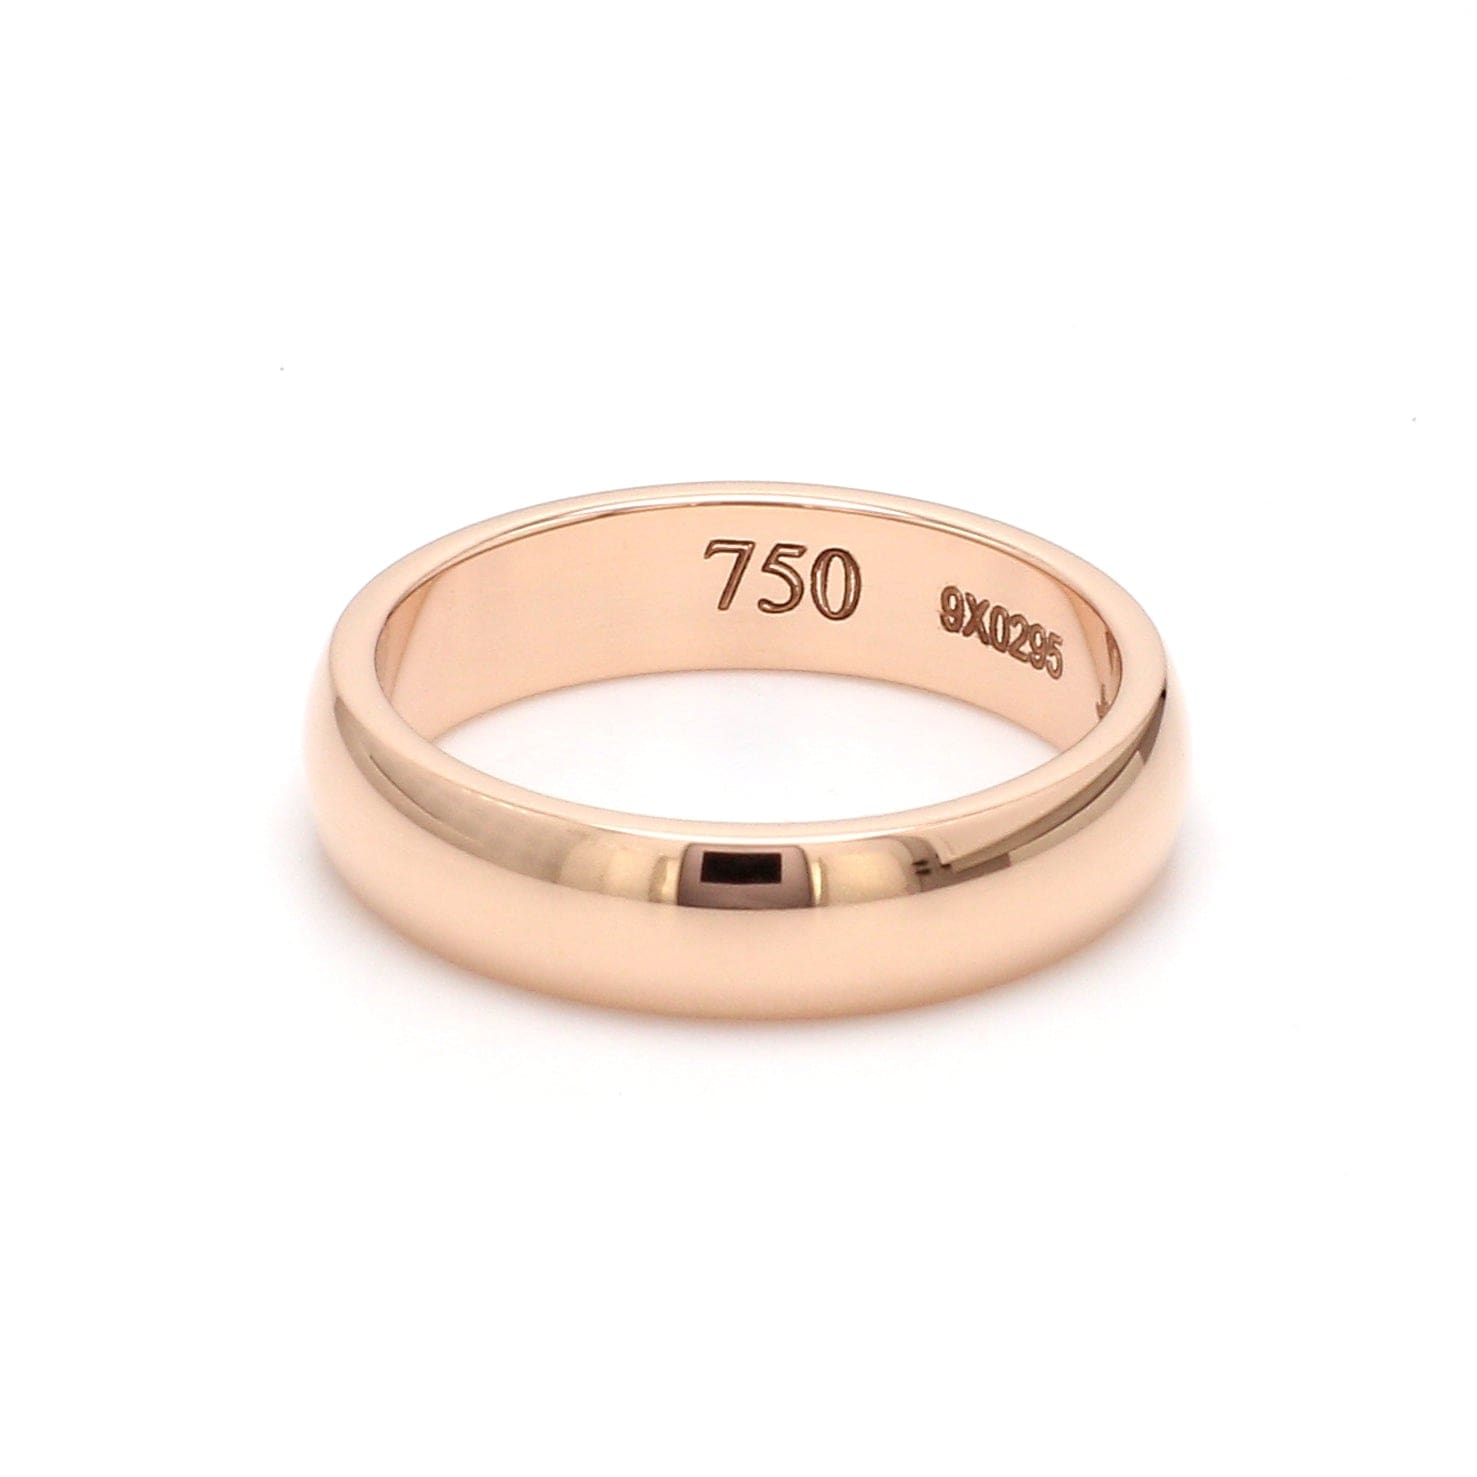 Buy Joyalukkas 18k Gold Ring for Women Online At Best Price @ Tata CLiQ